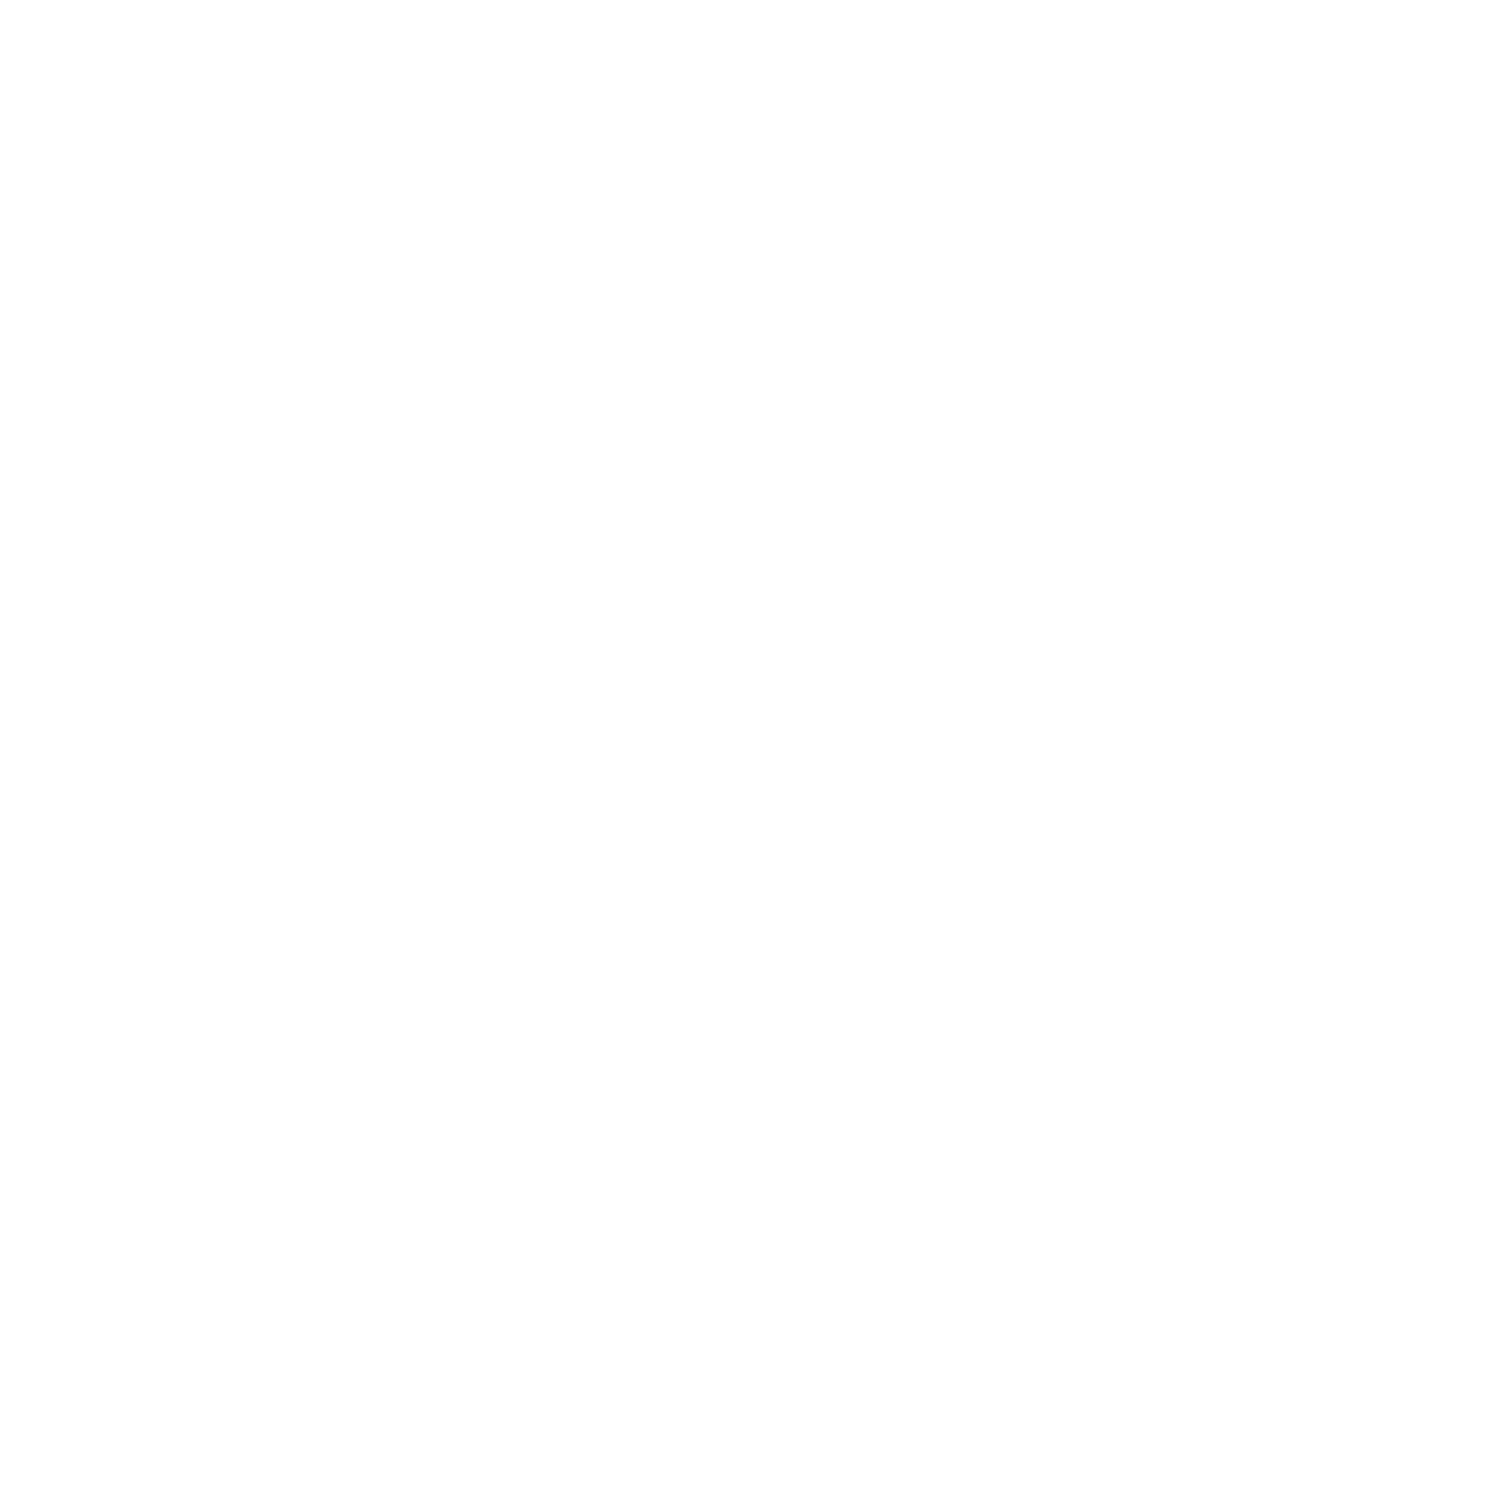 Pitney Bowes logo pour fonds sombres (PNG transparent)